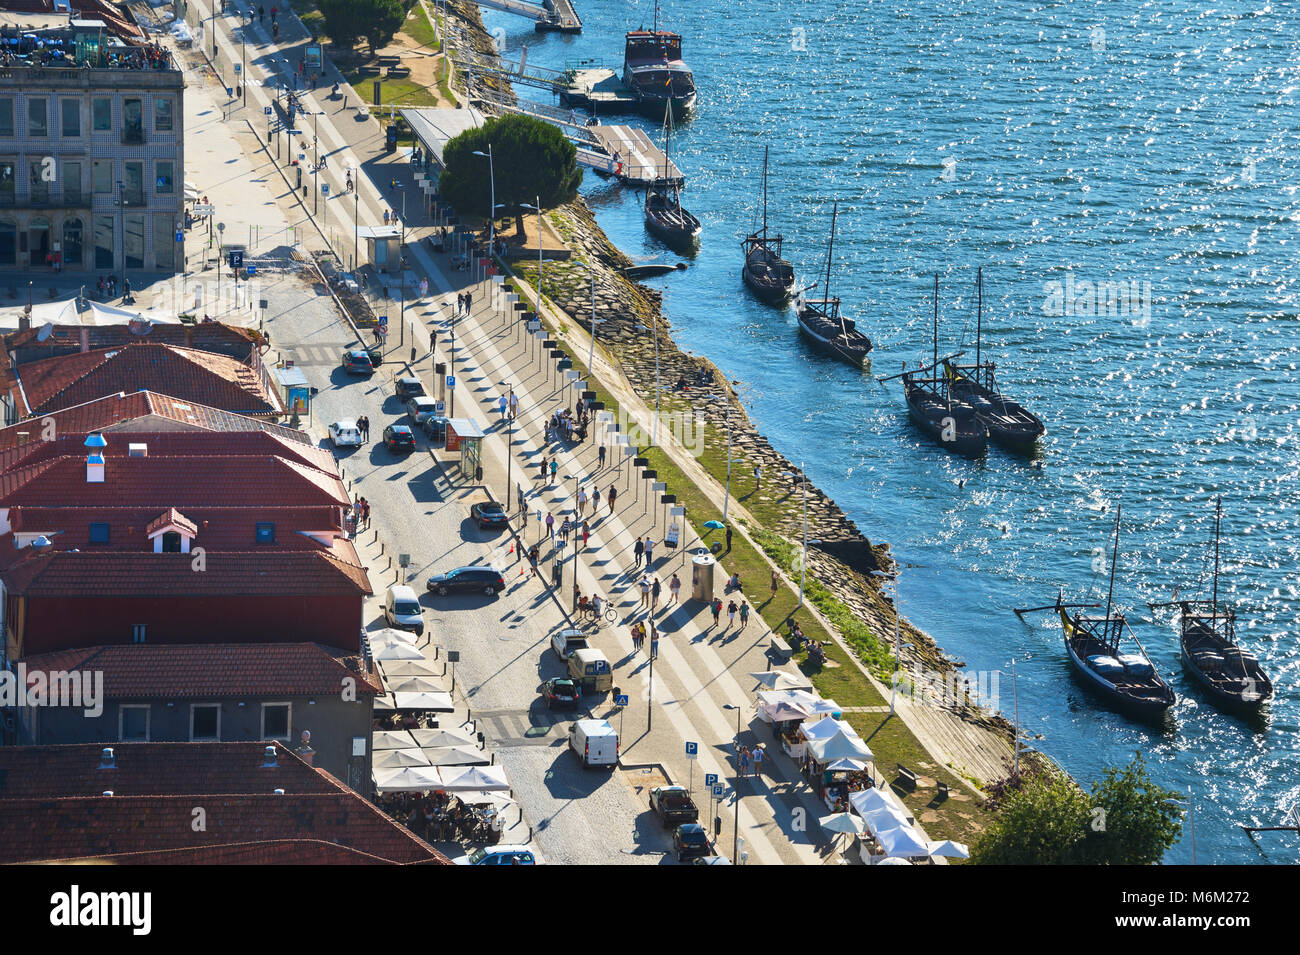 Vista aérea de Vila Nova de Gaia, con restaurantes y barcos tradicionales por terraplén, Porto, Portugal Foto de stock